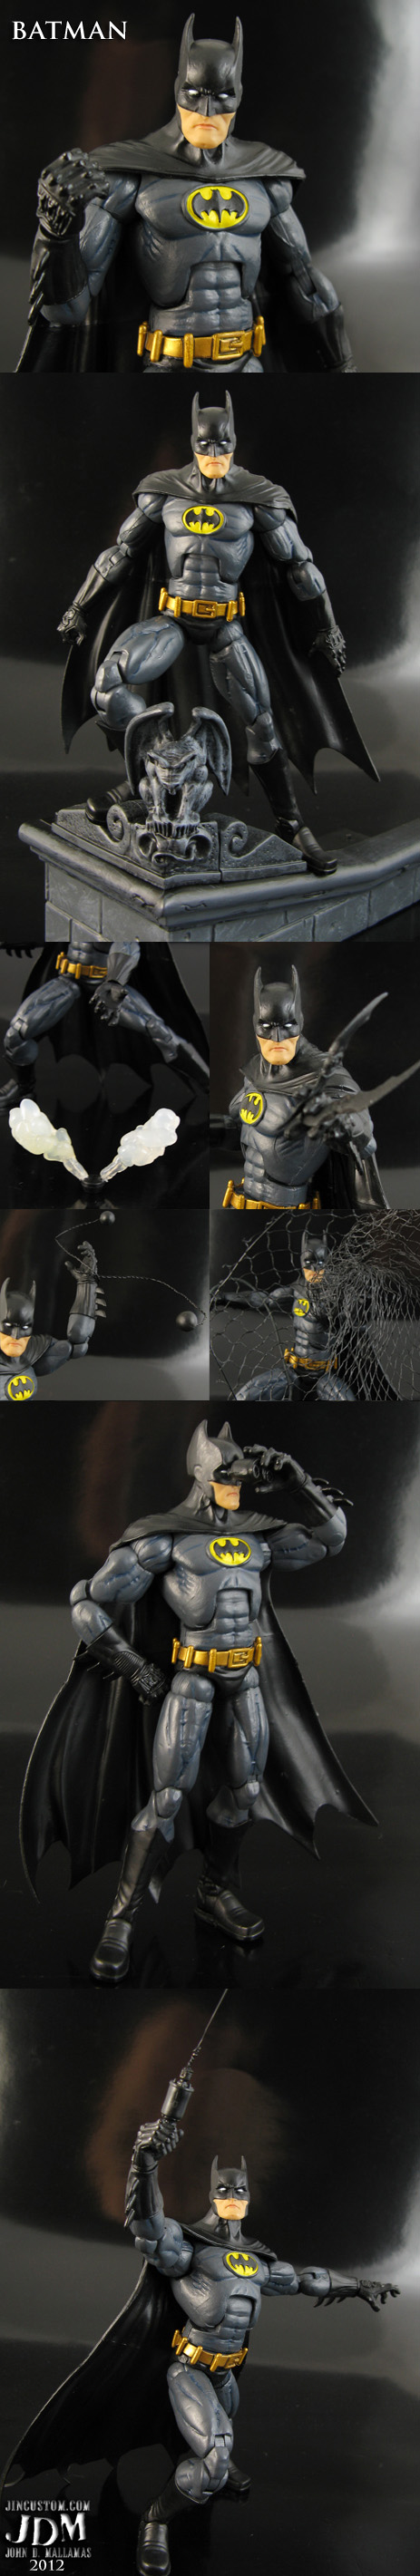 Super Articulated Batman Figure